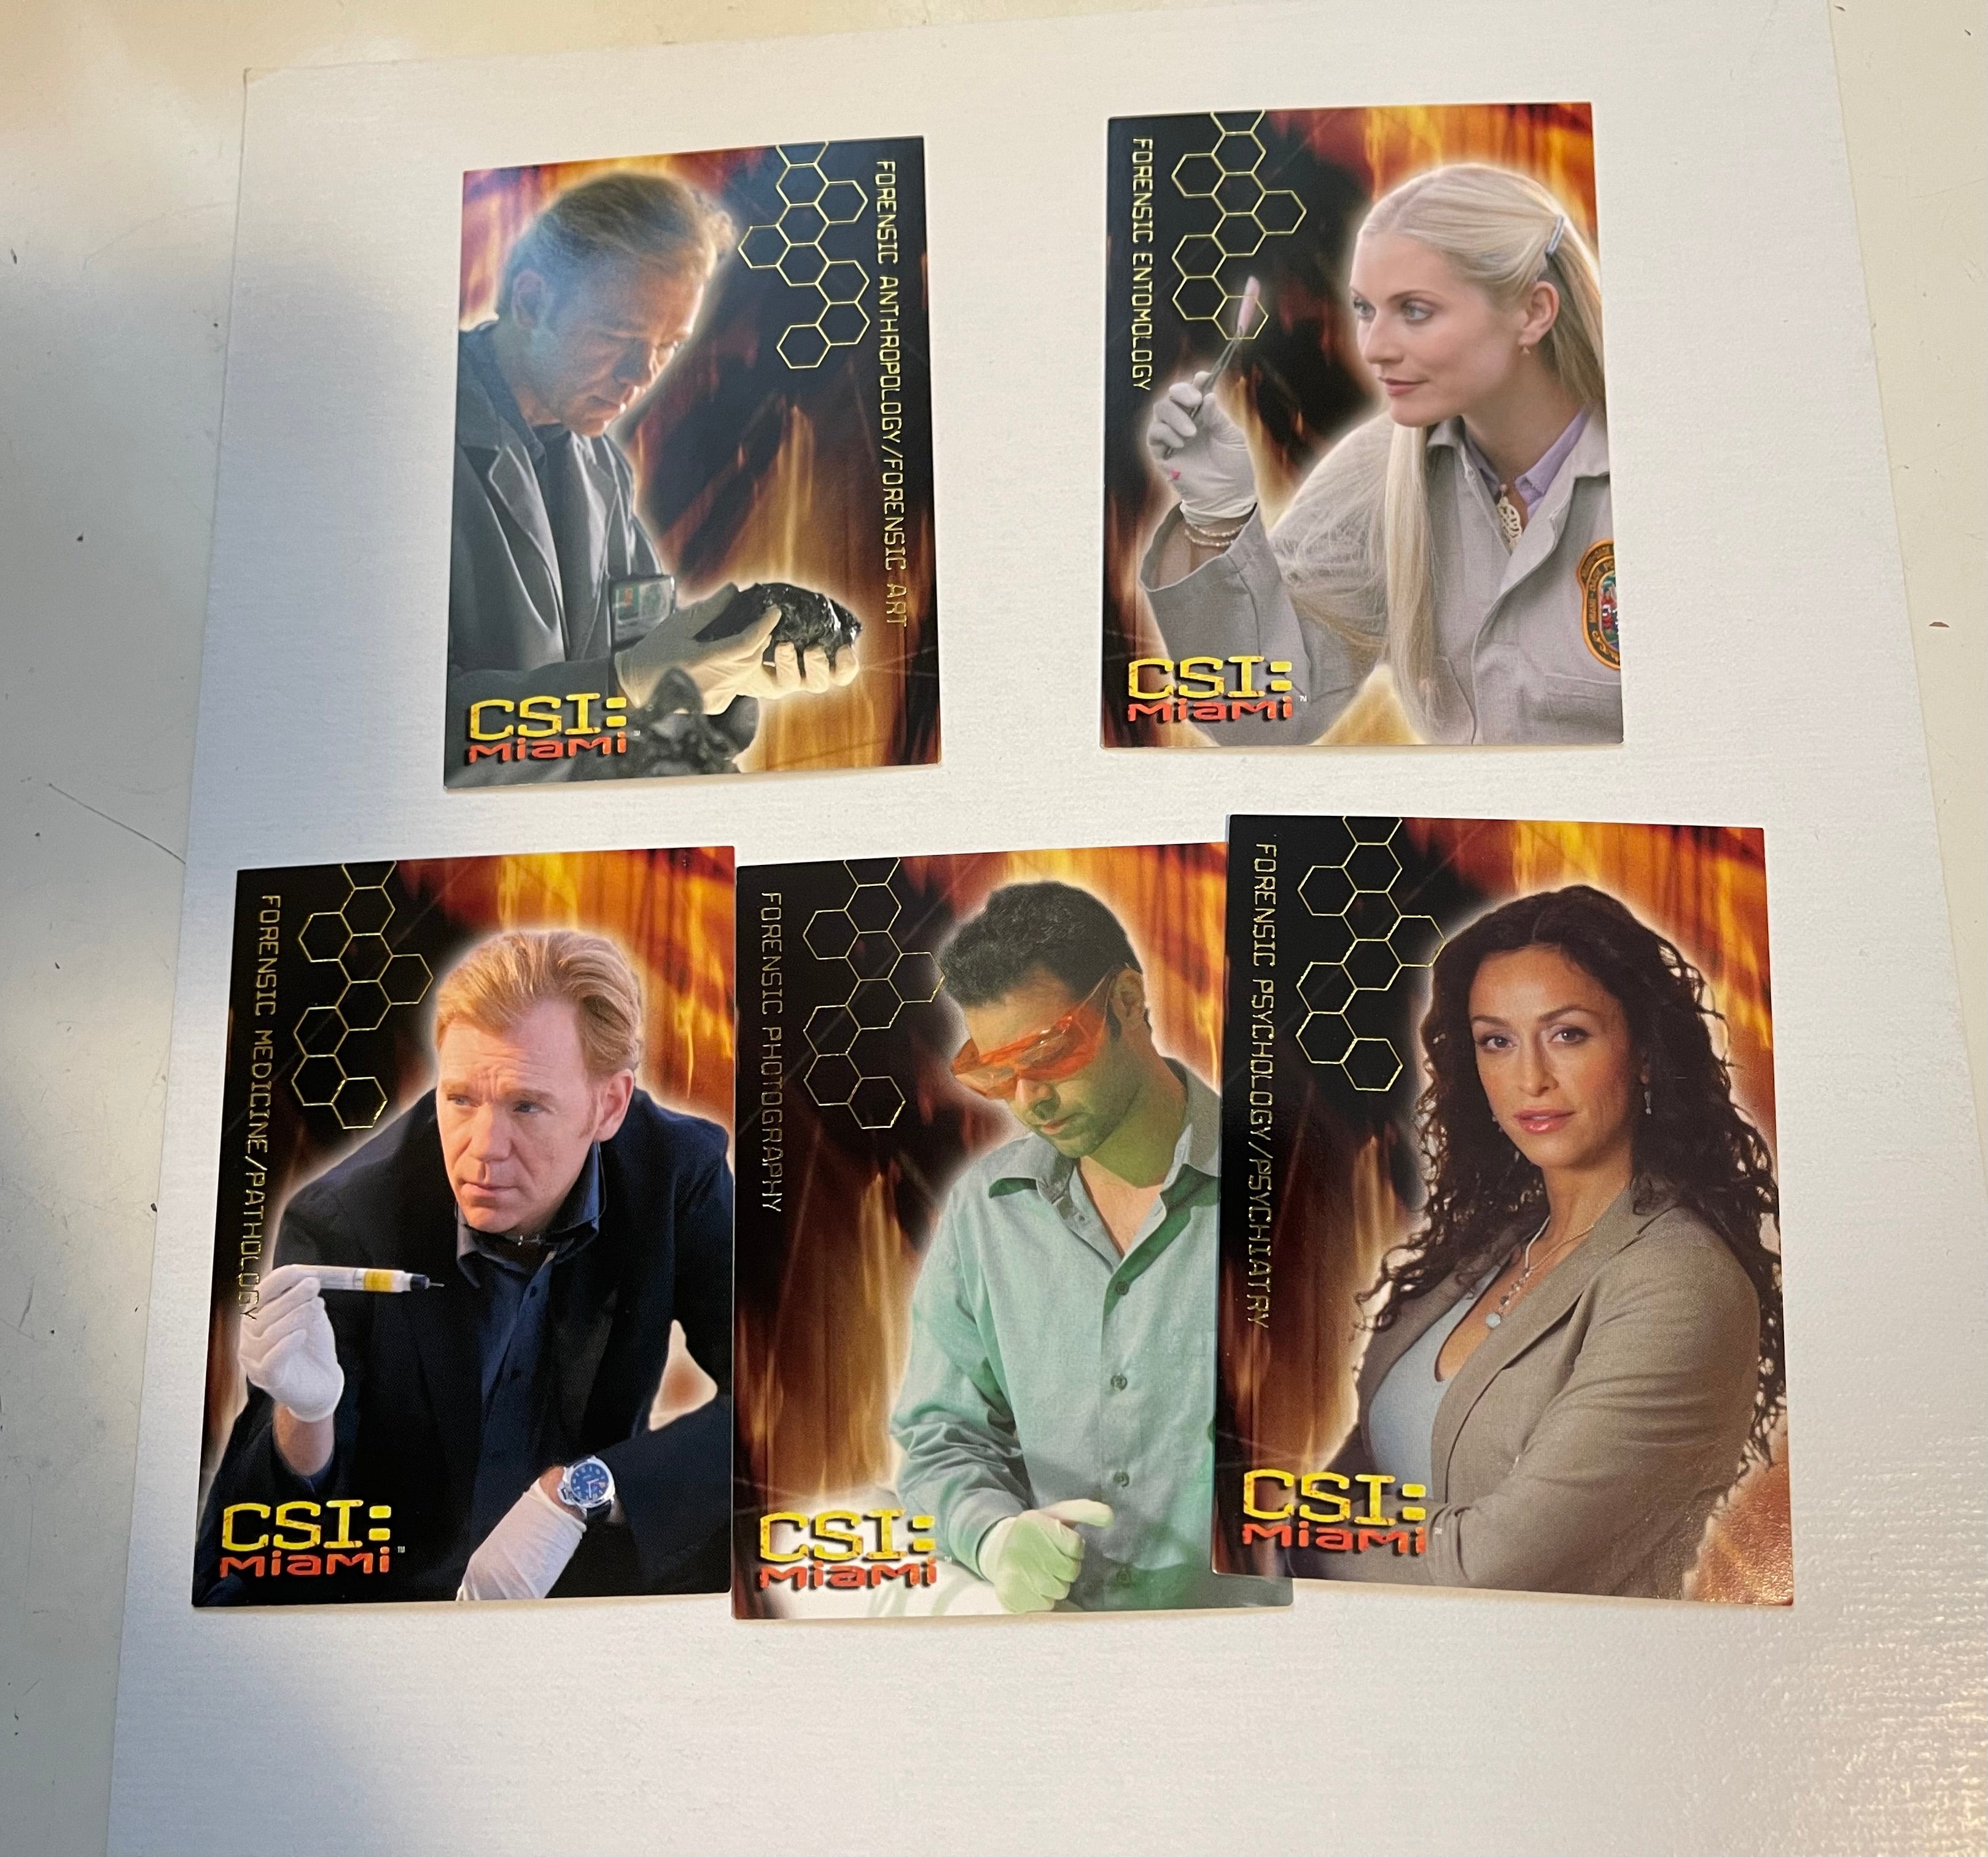 CSI Miami insert cards set